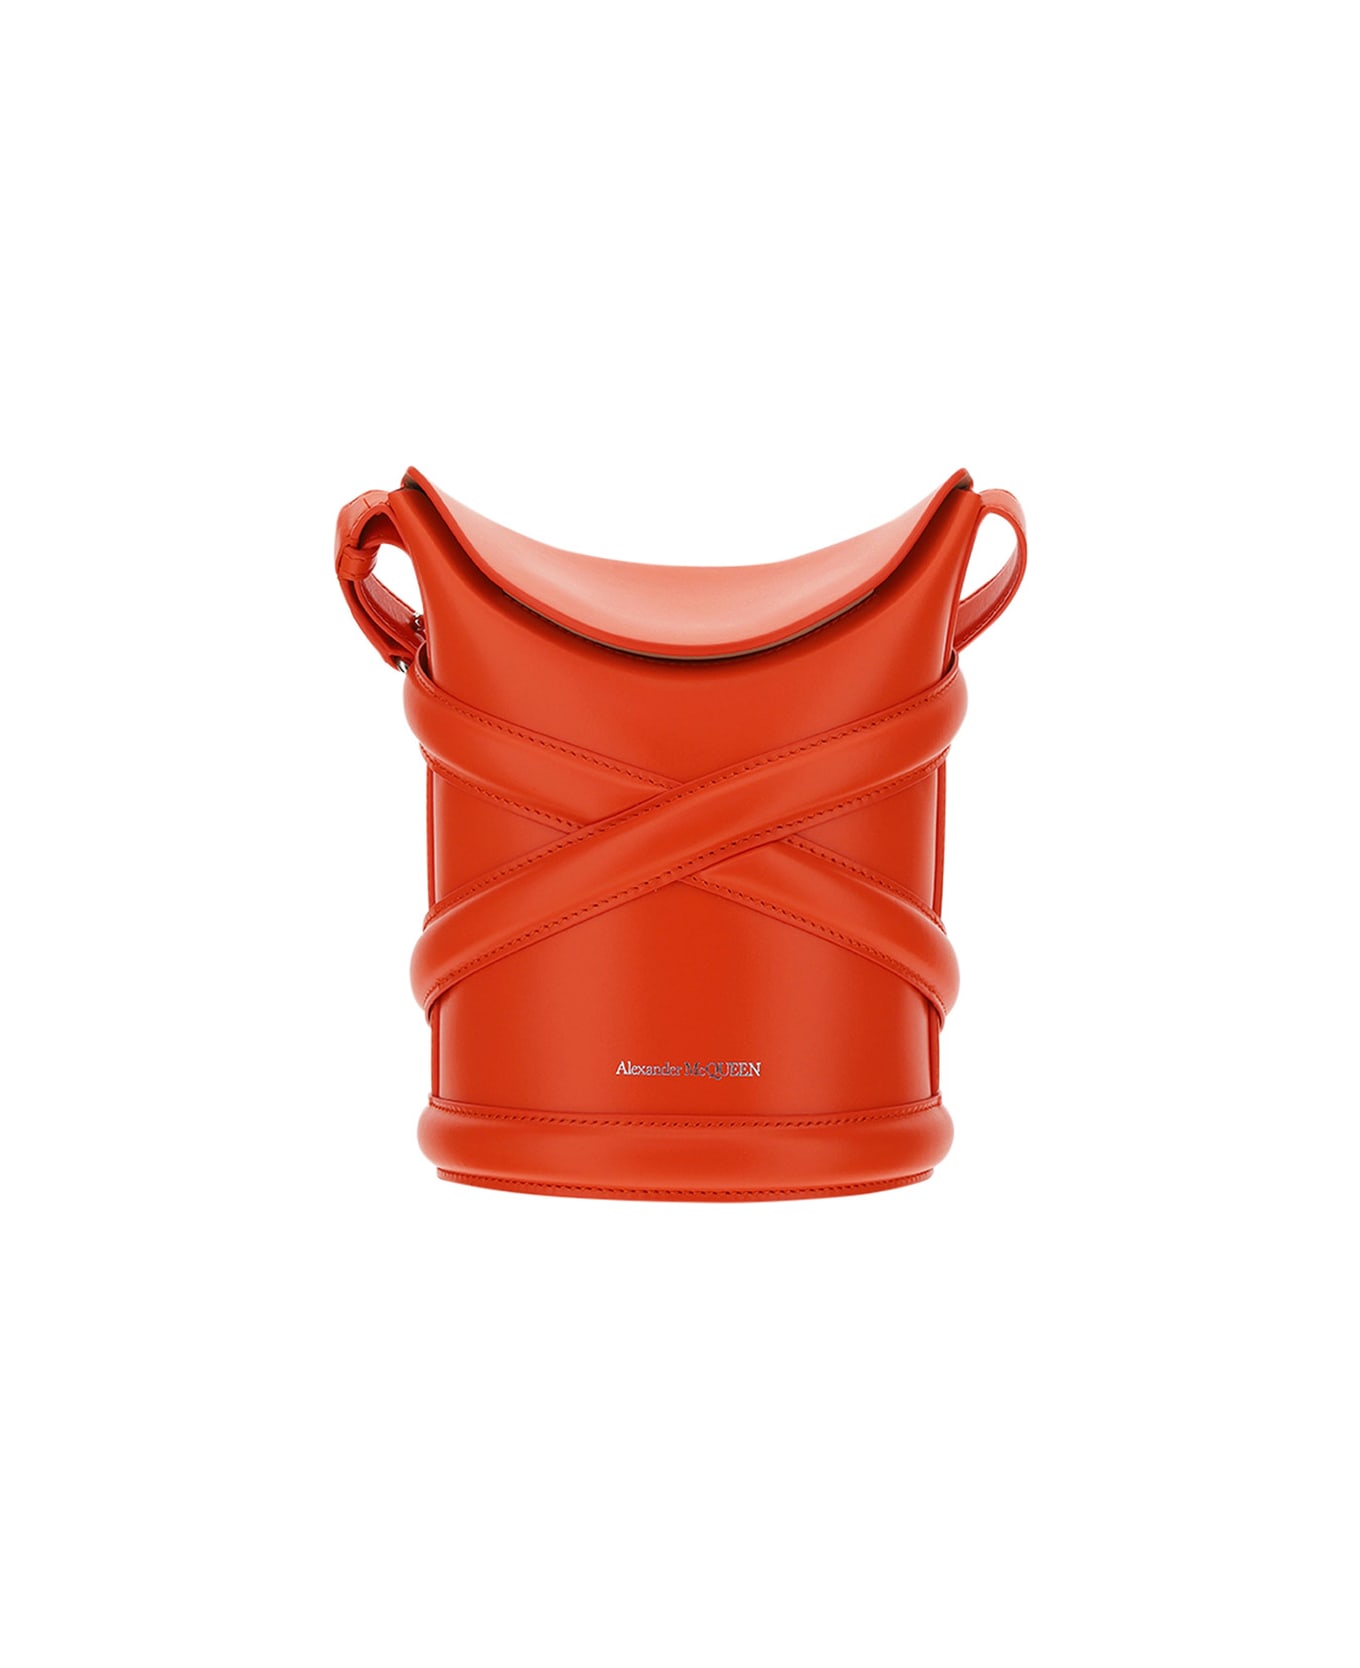 Alexander McQueen The Curve Bucket Bag - Orange トートバッグ